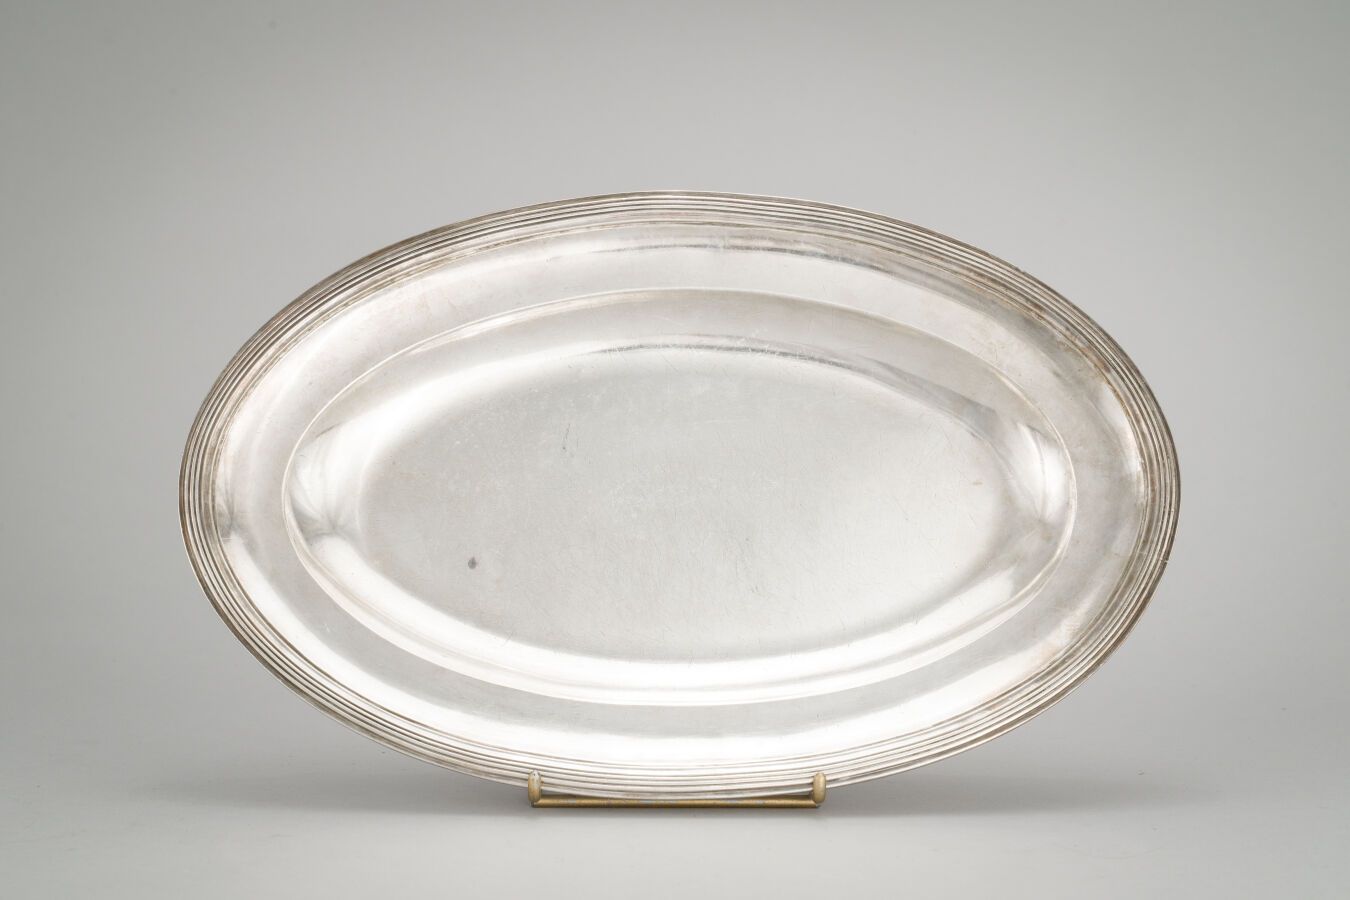 Null 97. Ovale Platte aus Silber (950/1000), am Rand mit Filets unterstrichen.

&hellip;